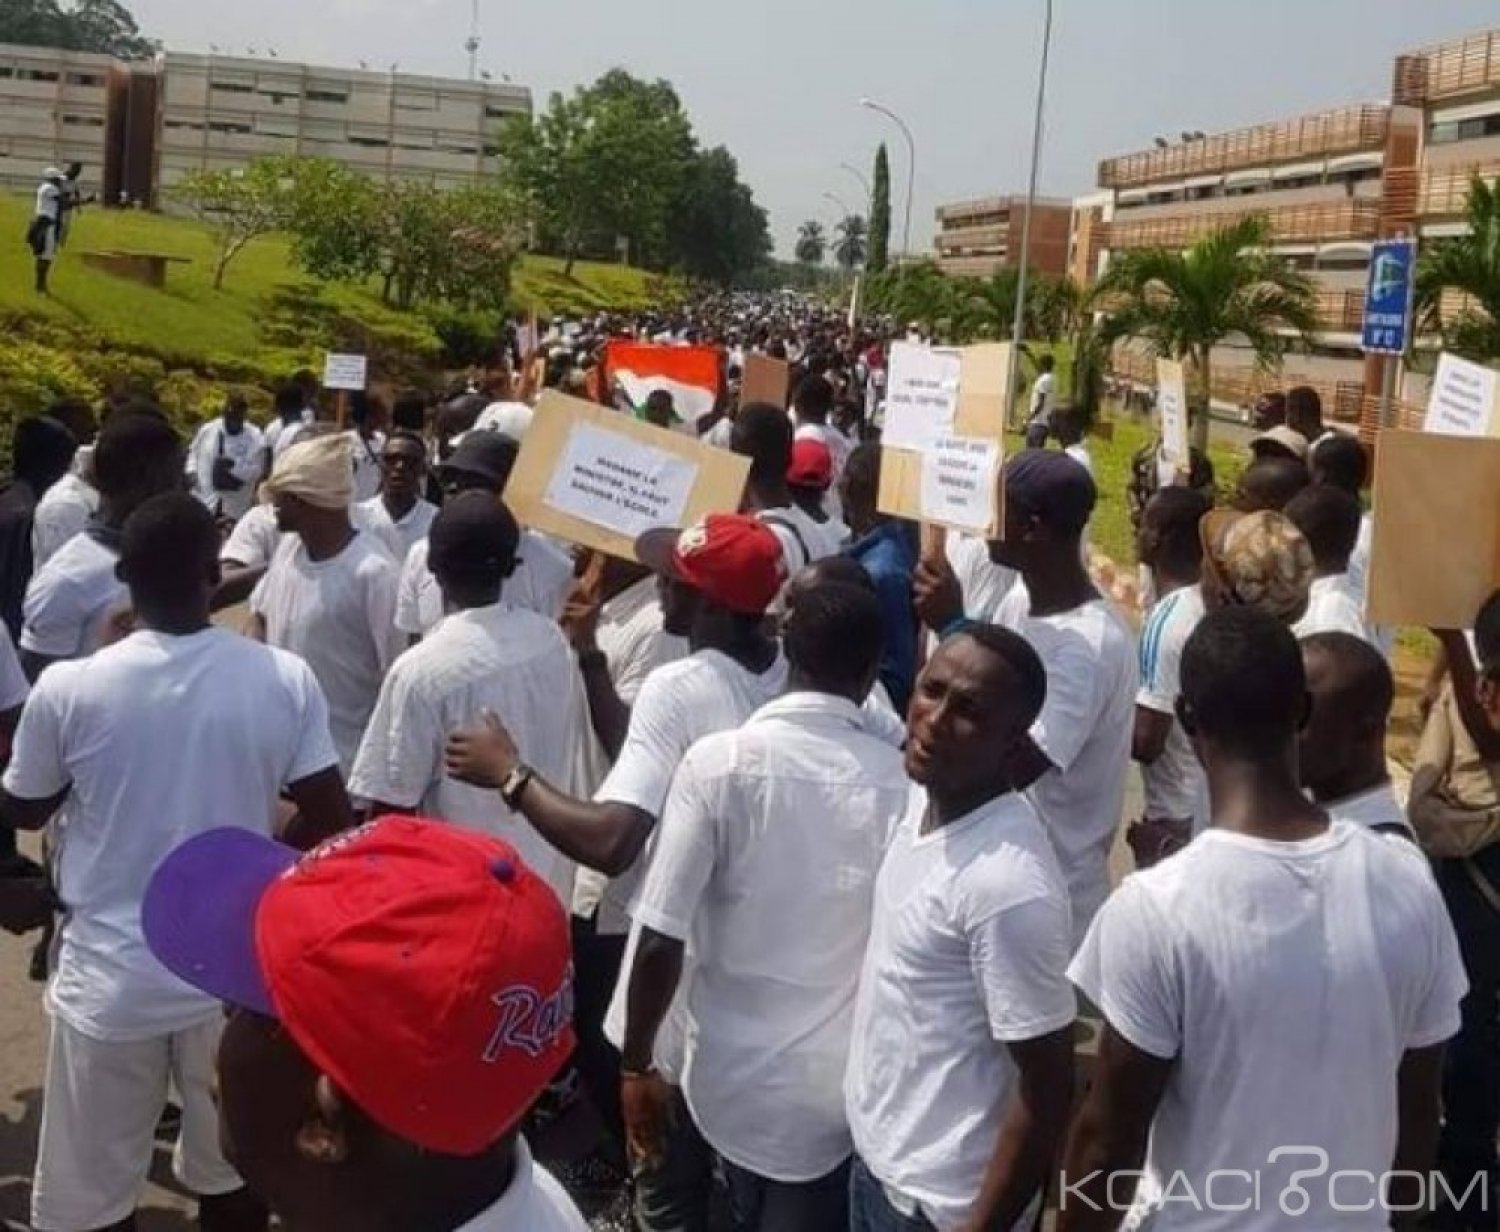 Côte d'Ivoire : Grève dans le secteur éducation/formation, la Fesci marche pour exiger la reprise des cours